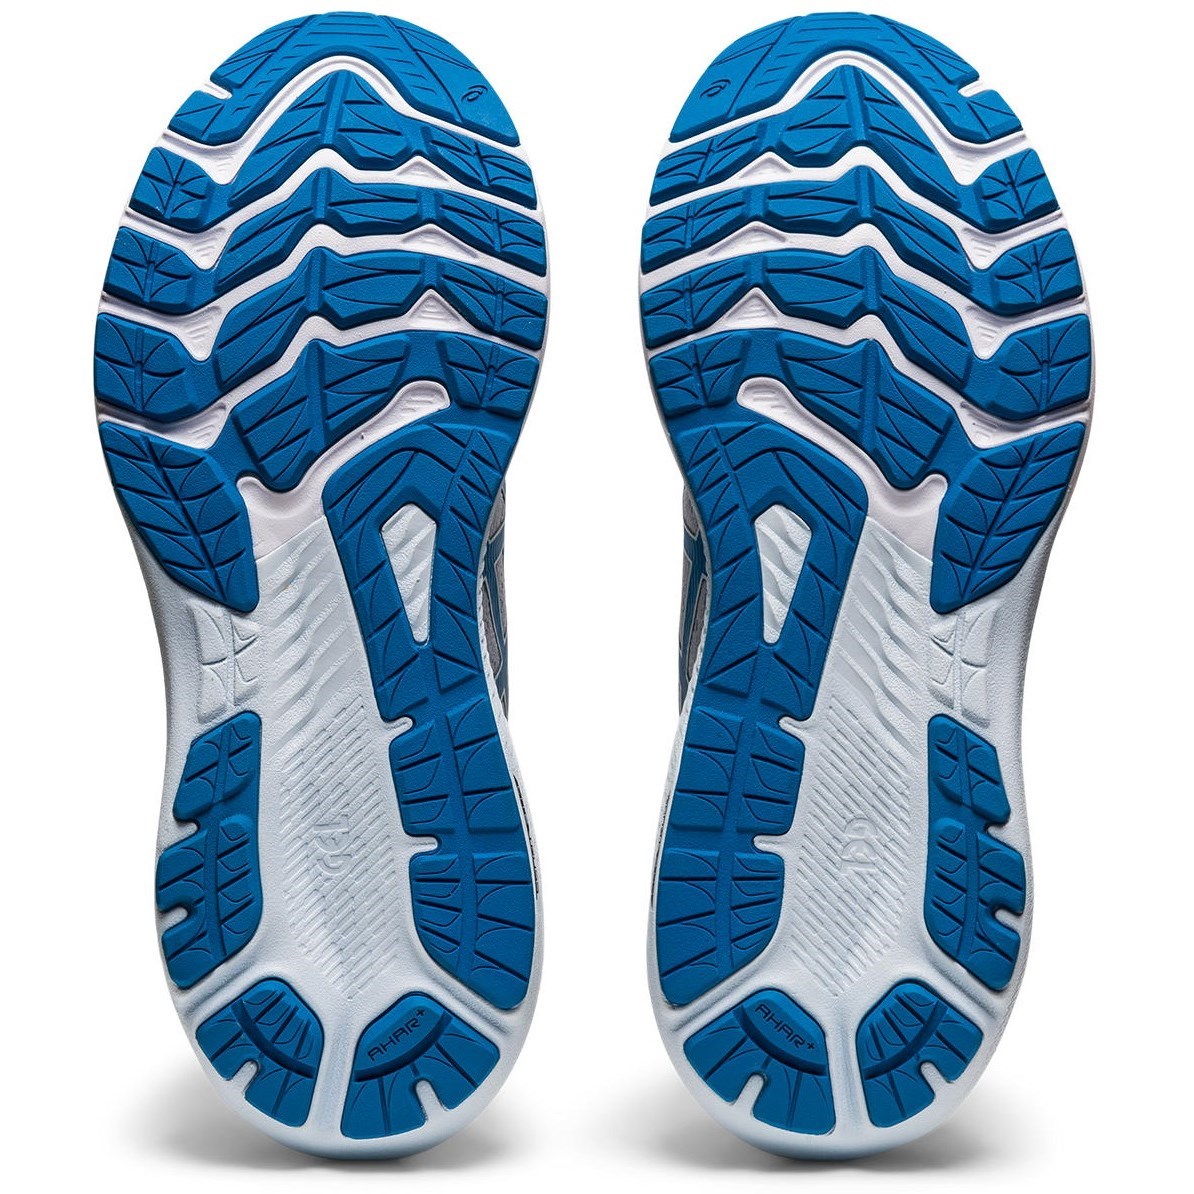 Asics GT-2000 11 - Womens Running Shoes - Piedmont Grey/Reborn Blue ...